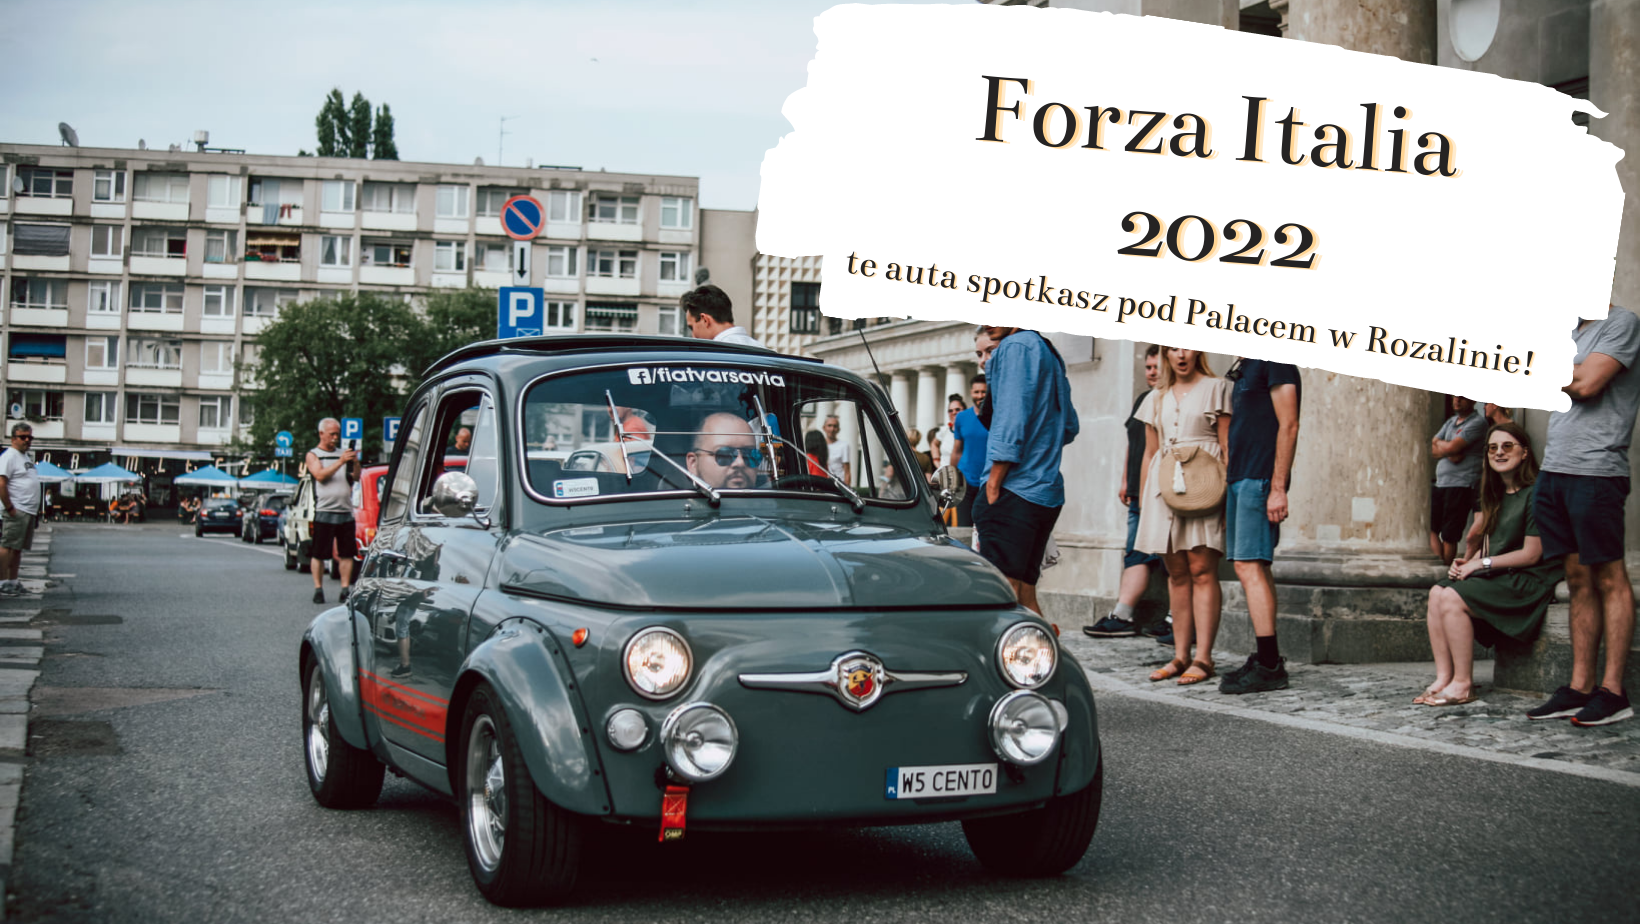 Forza Italia 2022 coraz bliżej. Jakie auta zobaczymy na tej włoskiej fecie?